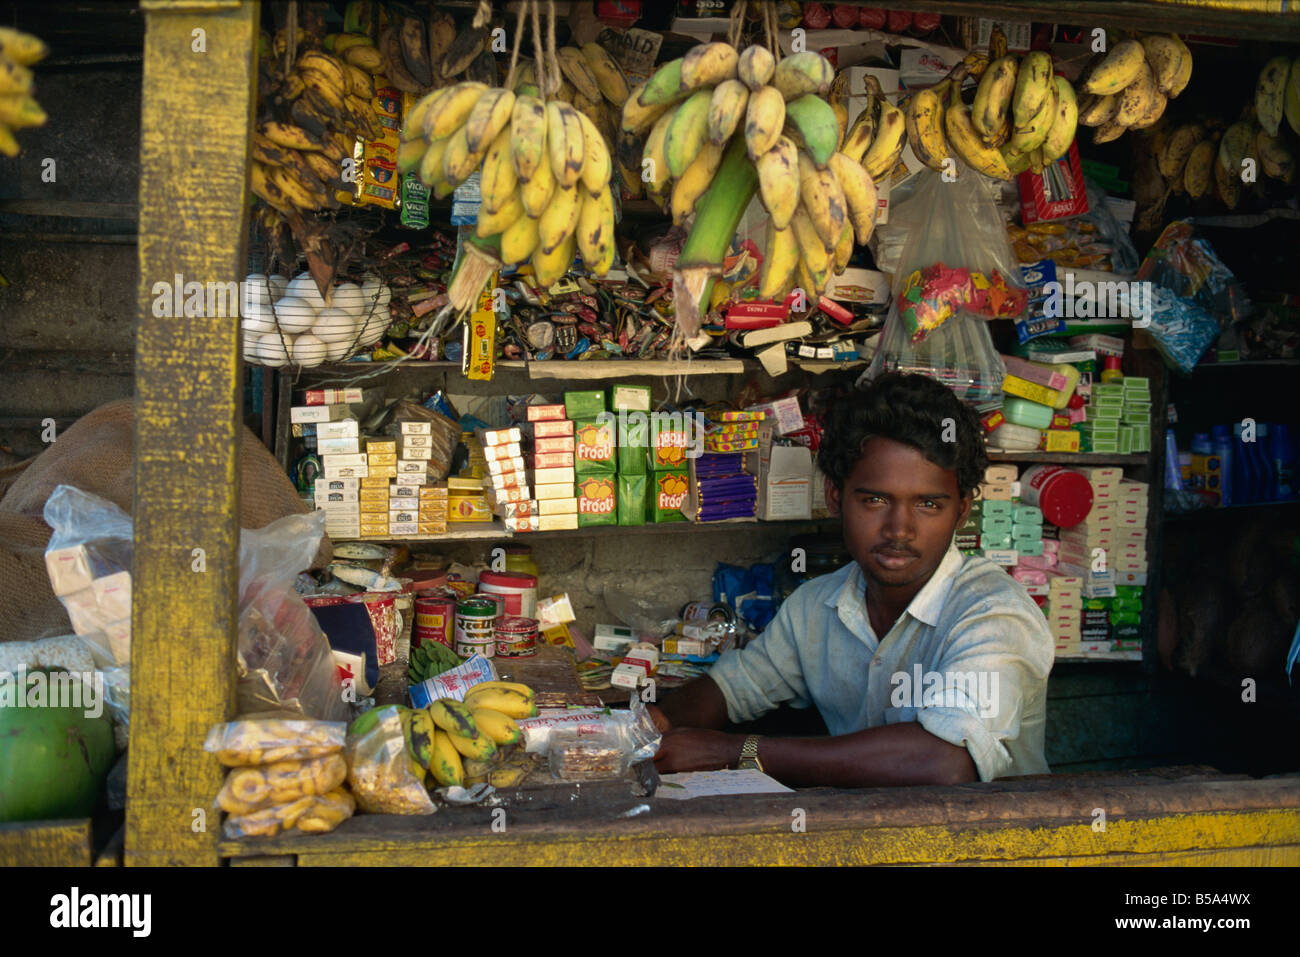 Vendeur de fruits Port Blair Iles Andaman en Inde Asie Banque D'Images